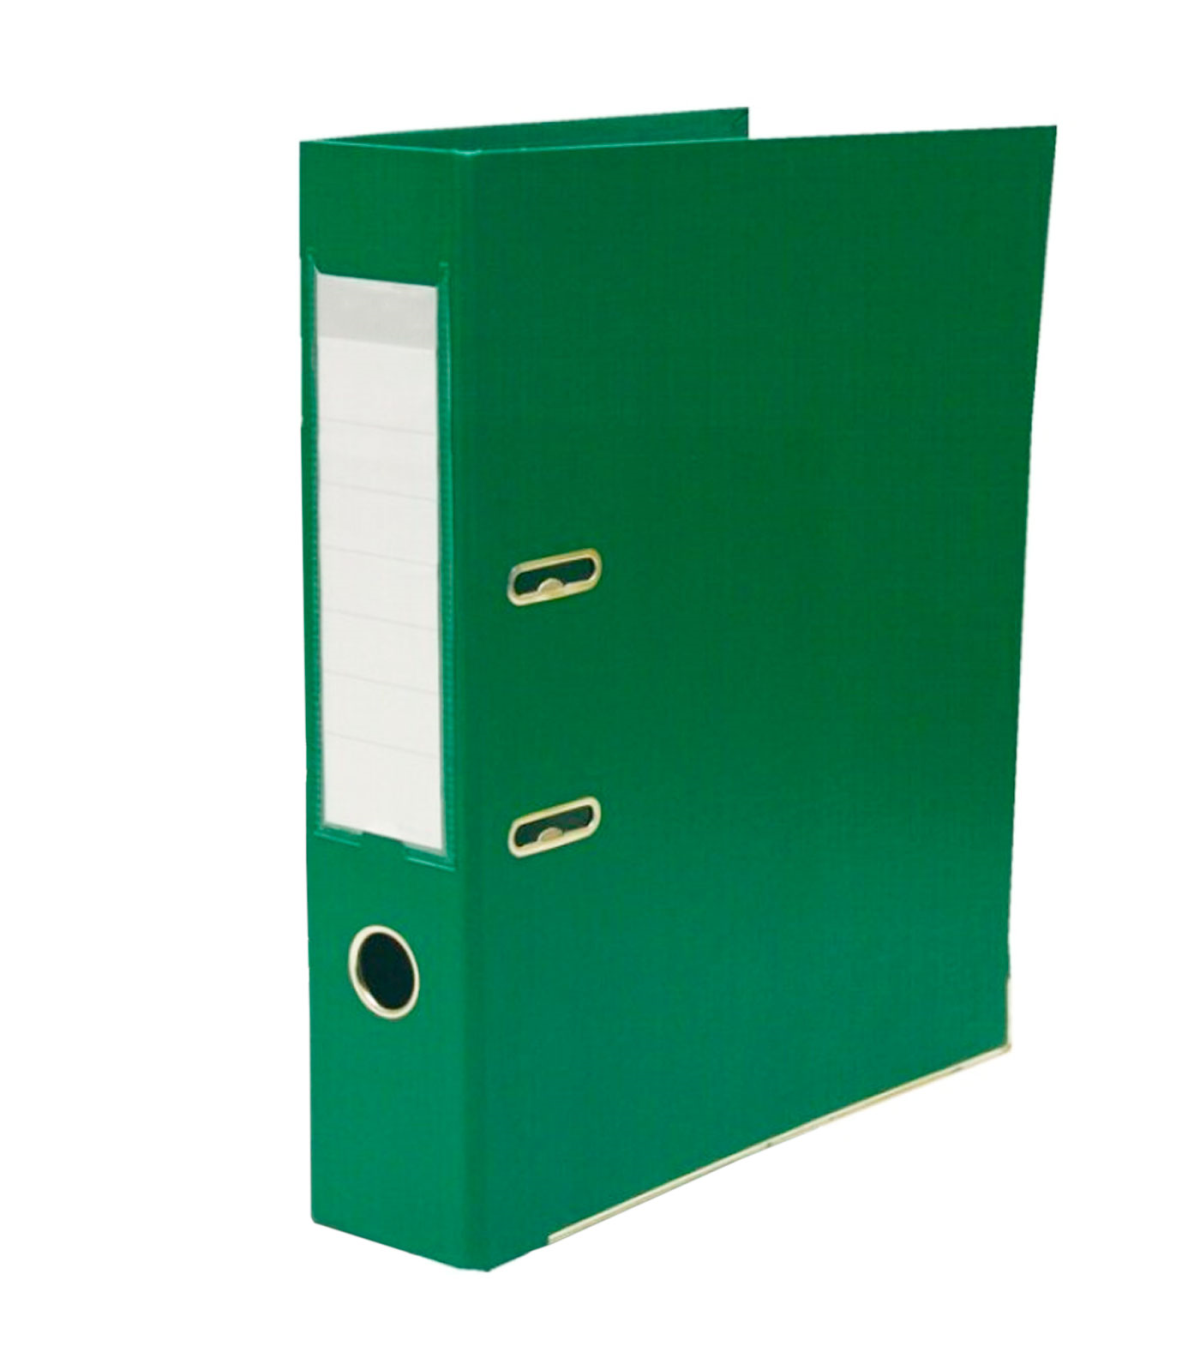 Tradineur - Archivador A-Z con caja - Fabricado en cartón - Ideal para  guardar, archivar u ordenar los documentos - 35 x 8 x 29